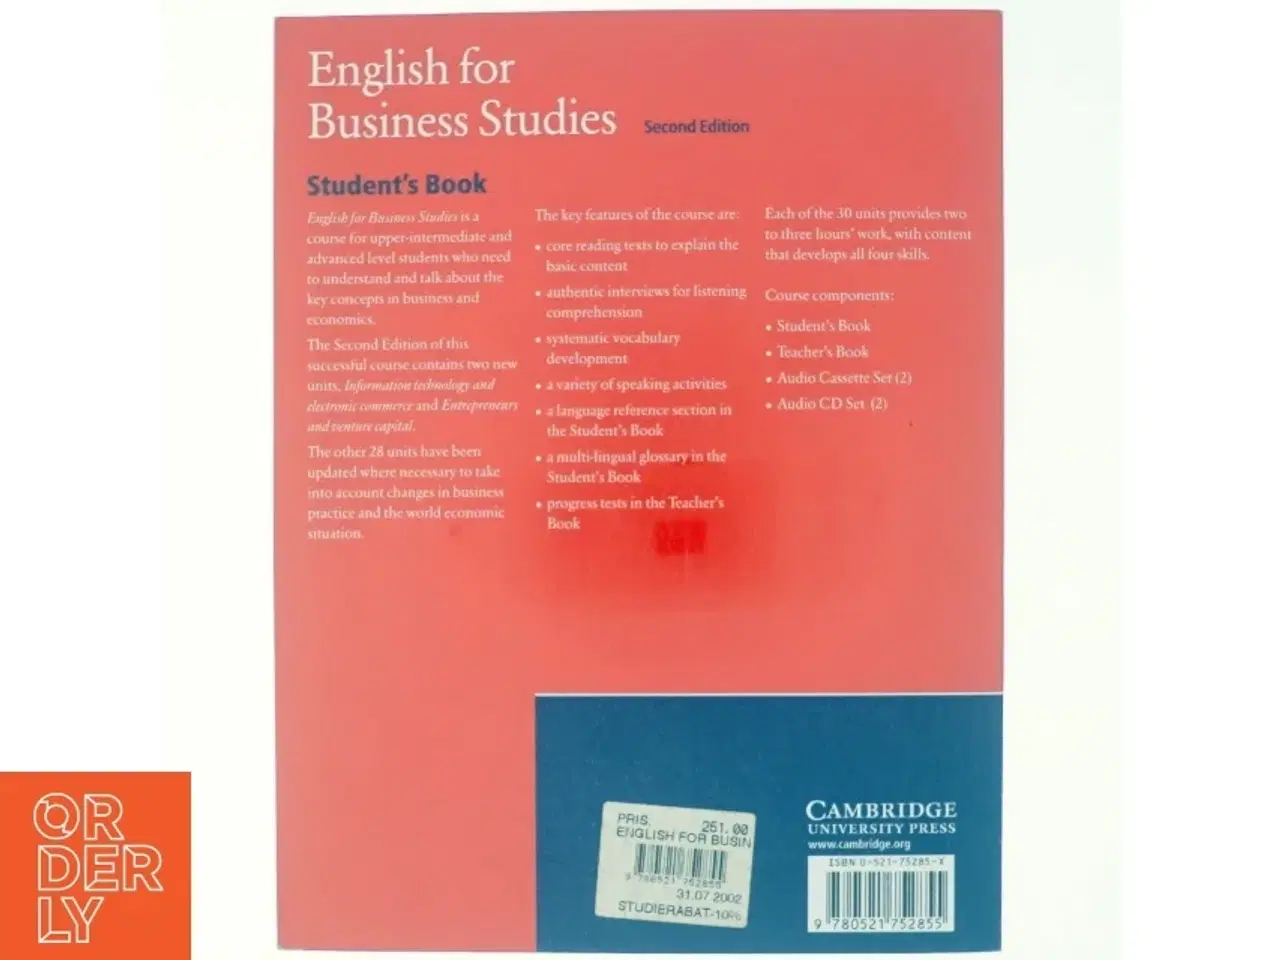 Billede 3 - English for Business Studies Student's Book af Ian MacKenzie (Bog)